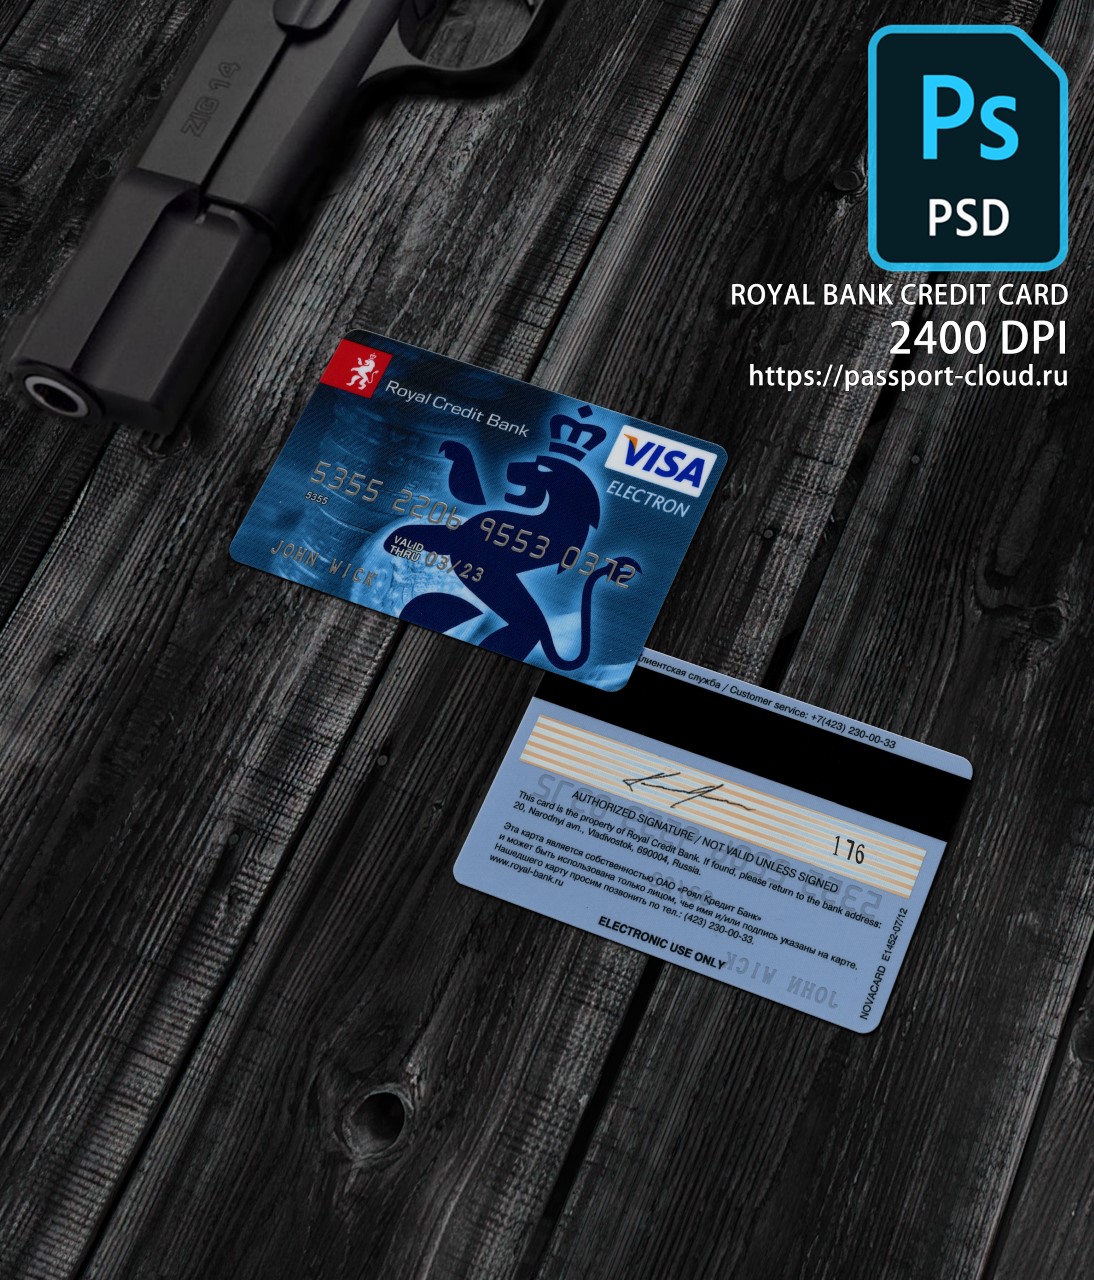 Royal Bank Credit Card PSD-0